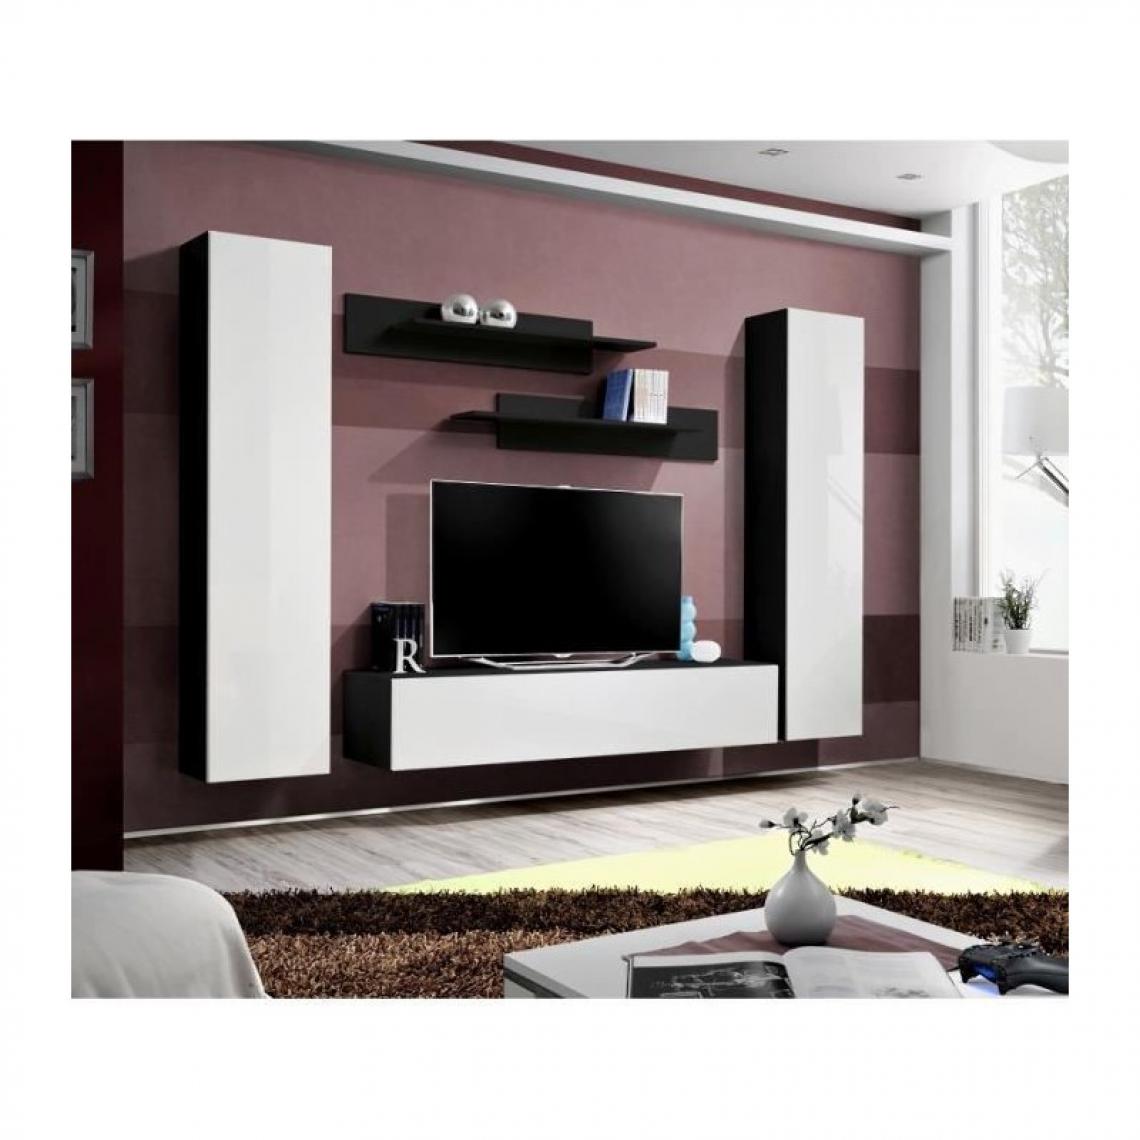 meublorama - Meuble TV FLY A1 design, coloris noir et blanc brillant. Meuble suspendu moderne et tendance pour votre salon. - Meubles TV, Hi-Fi